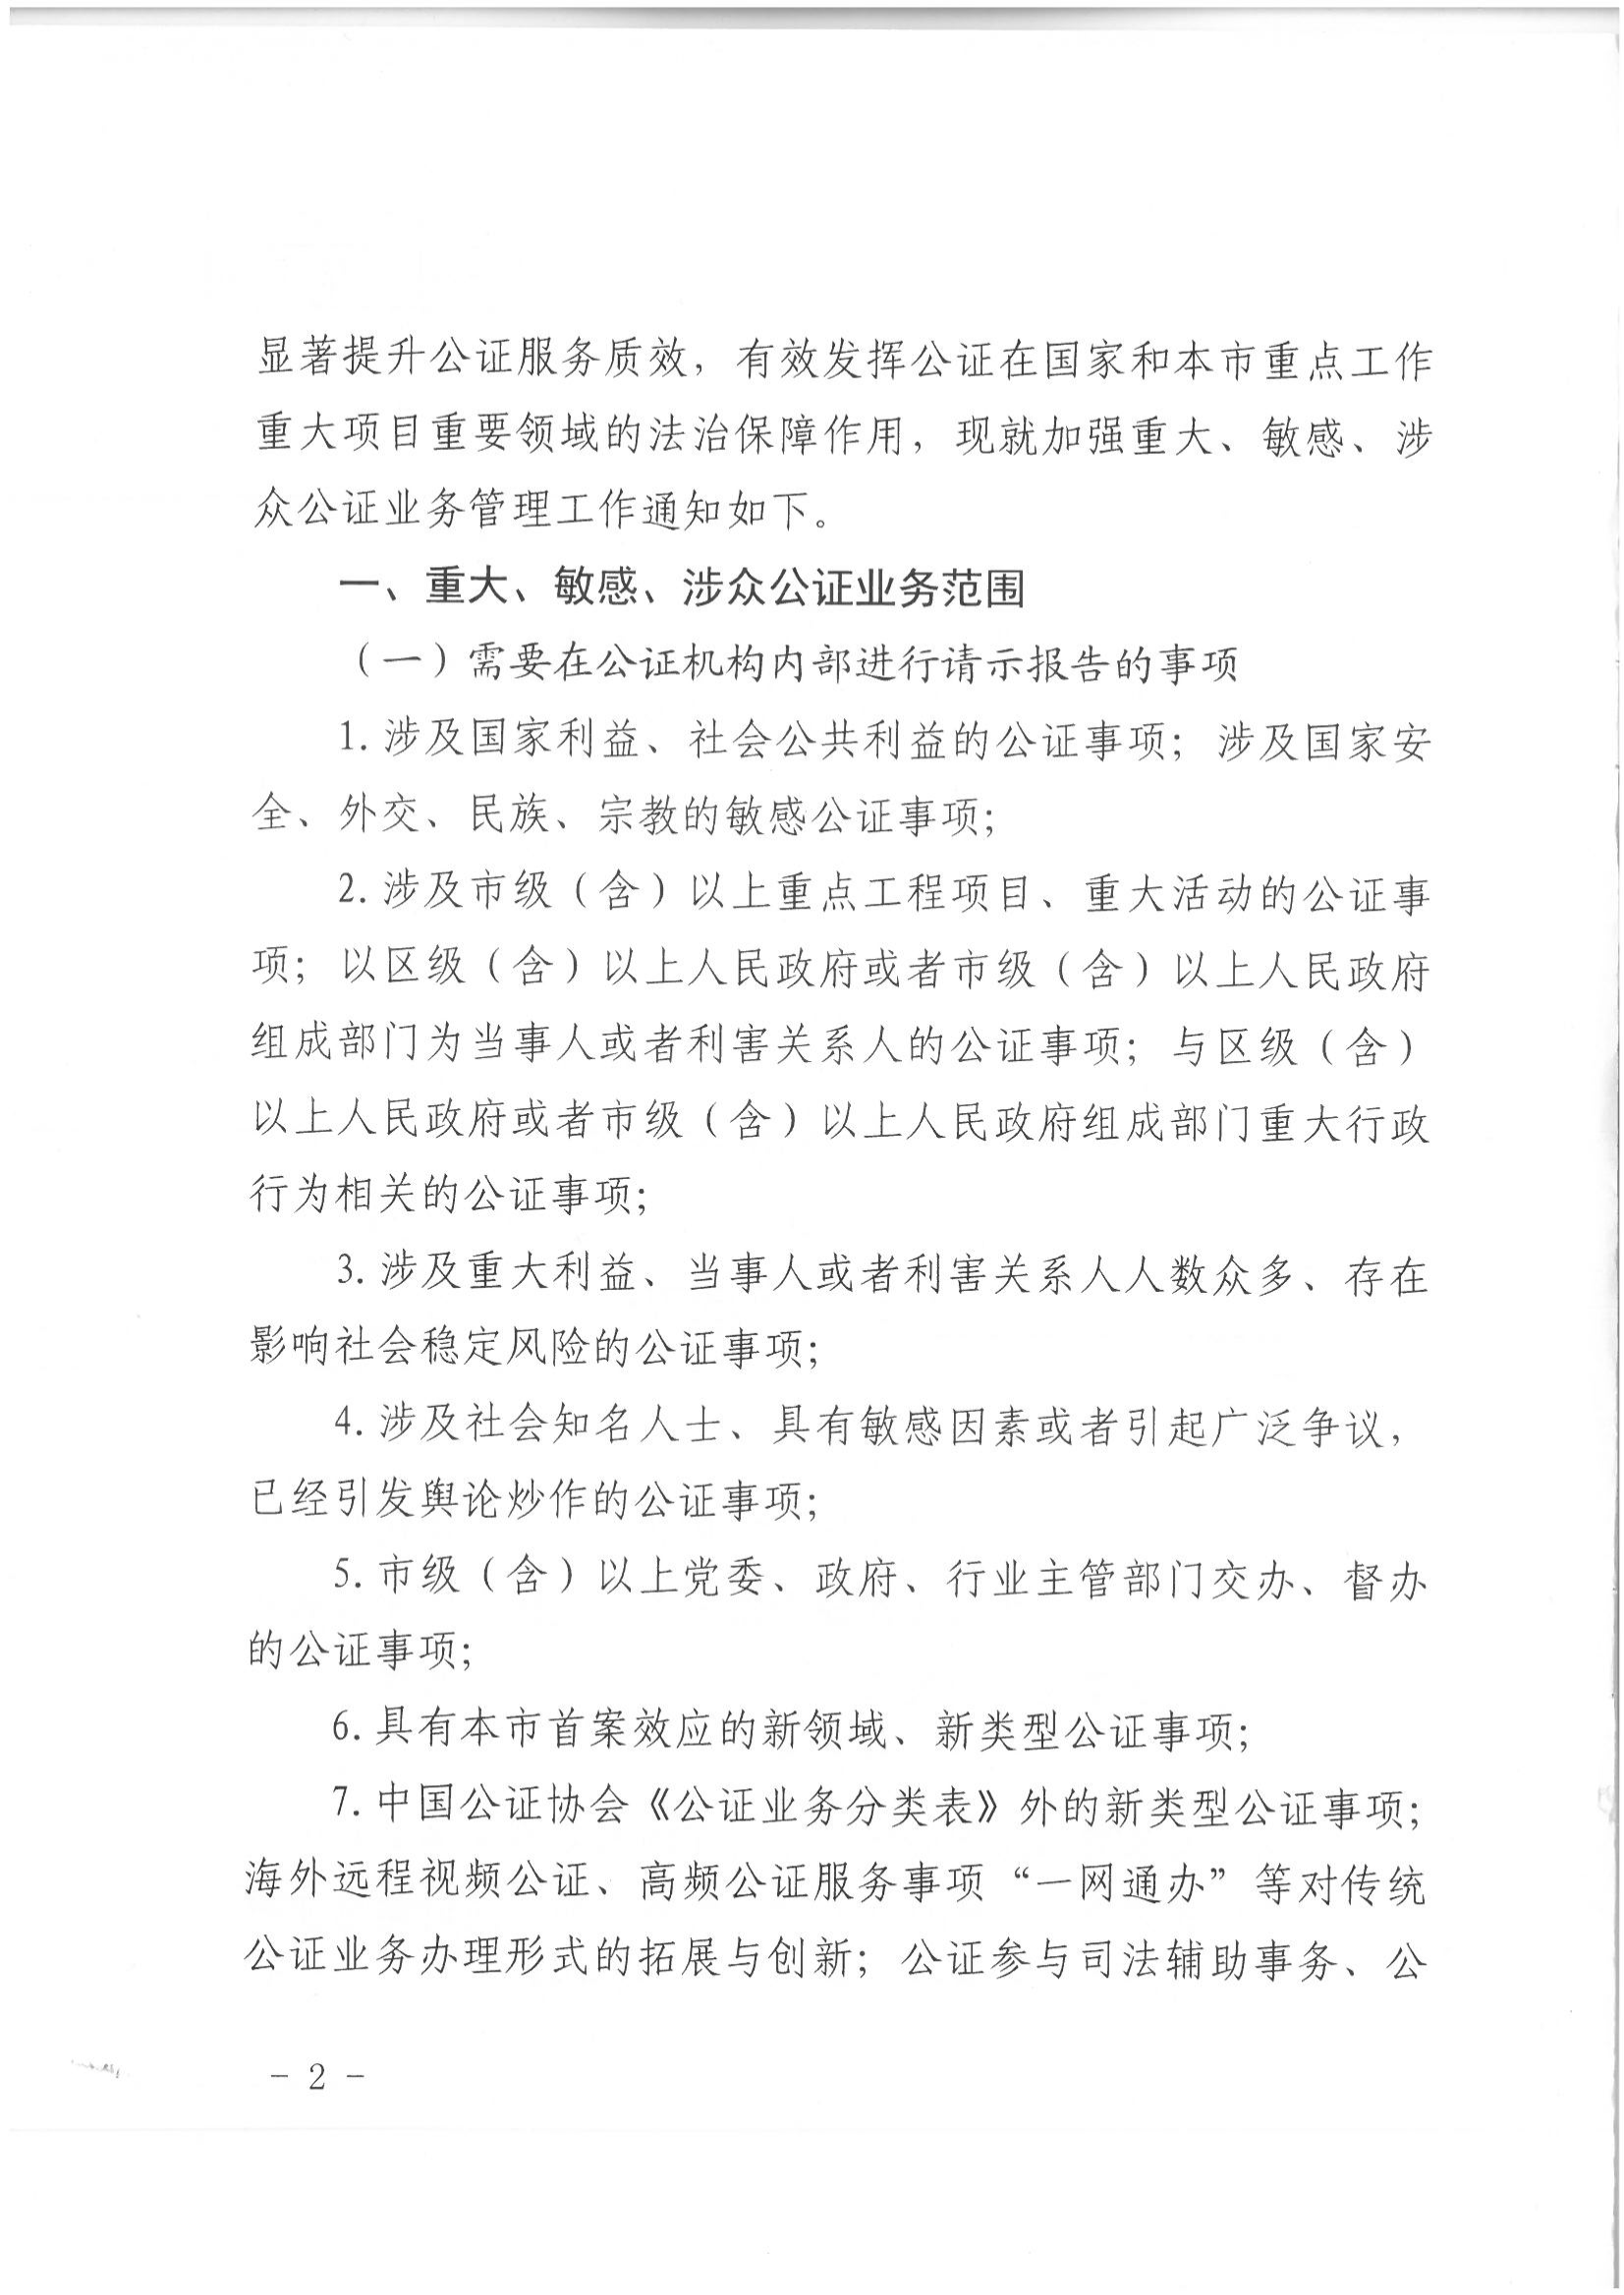 1北京市司法局办公室关于加强重大、敏感、涉众公证业务管理工作的通知_01